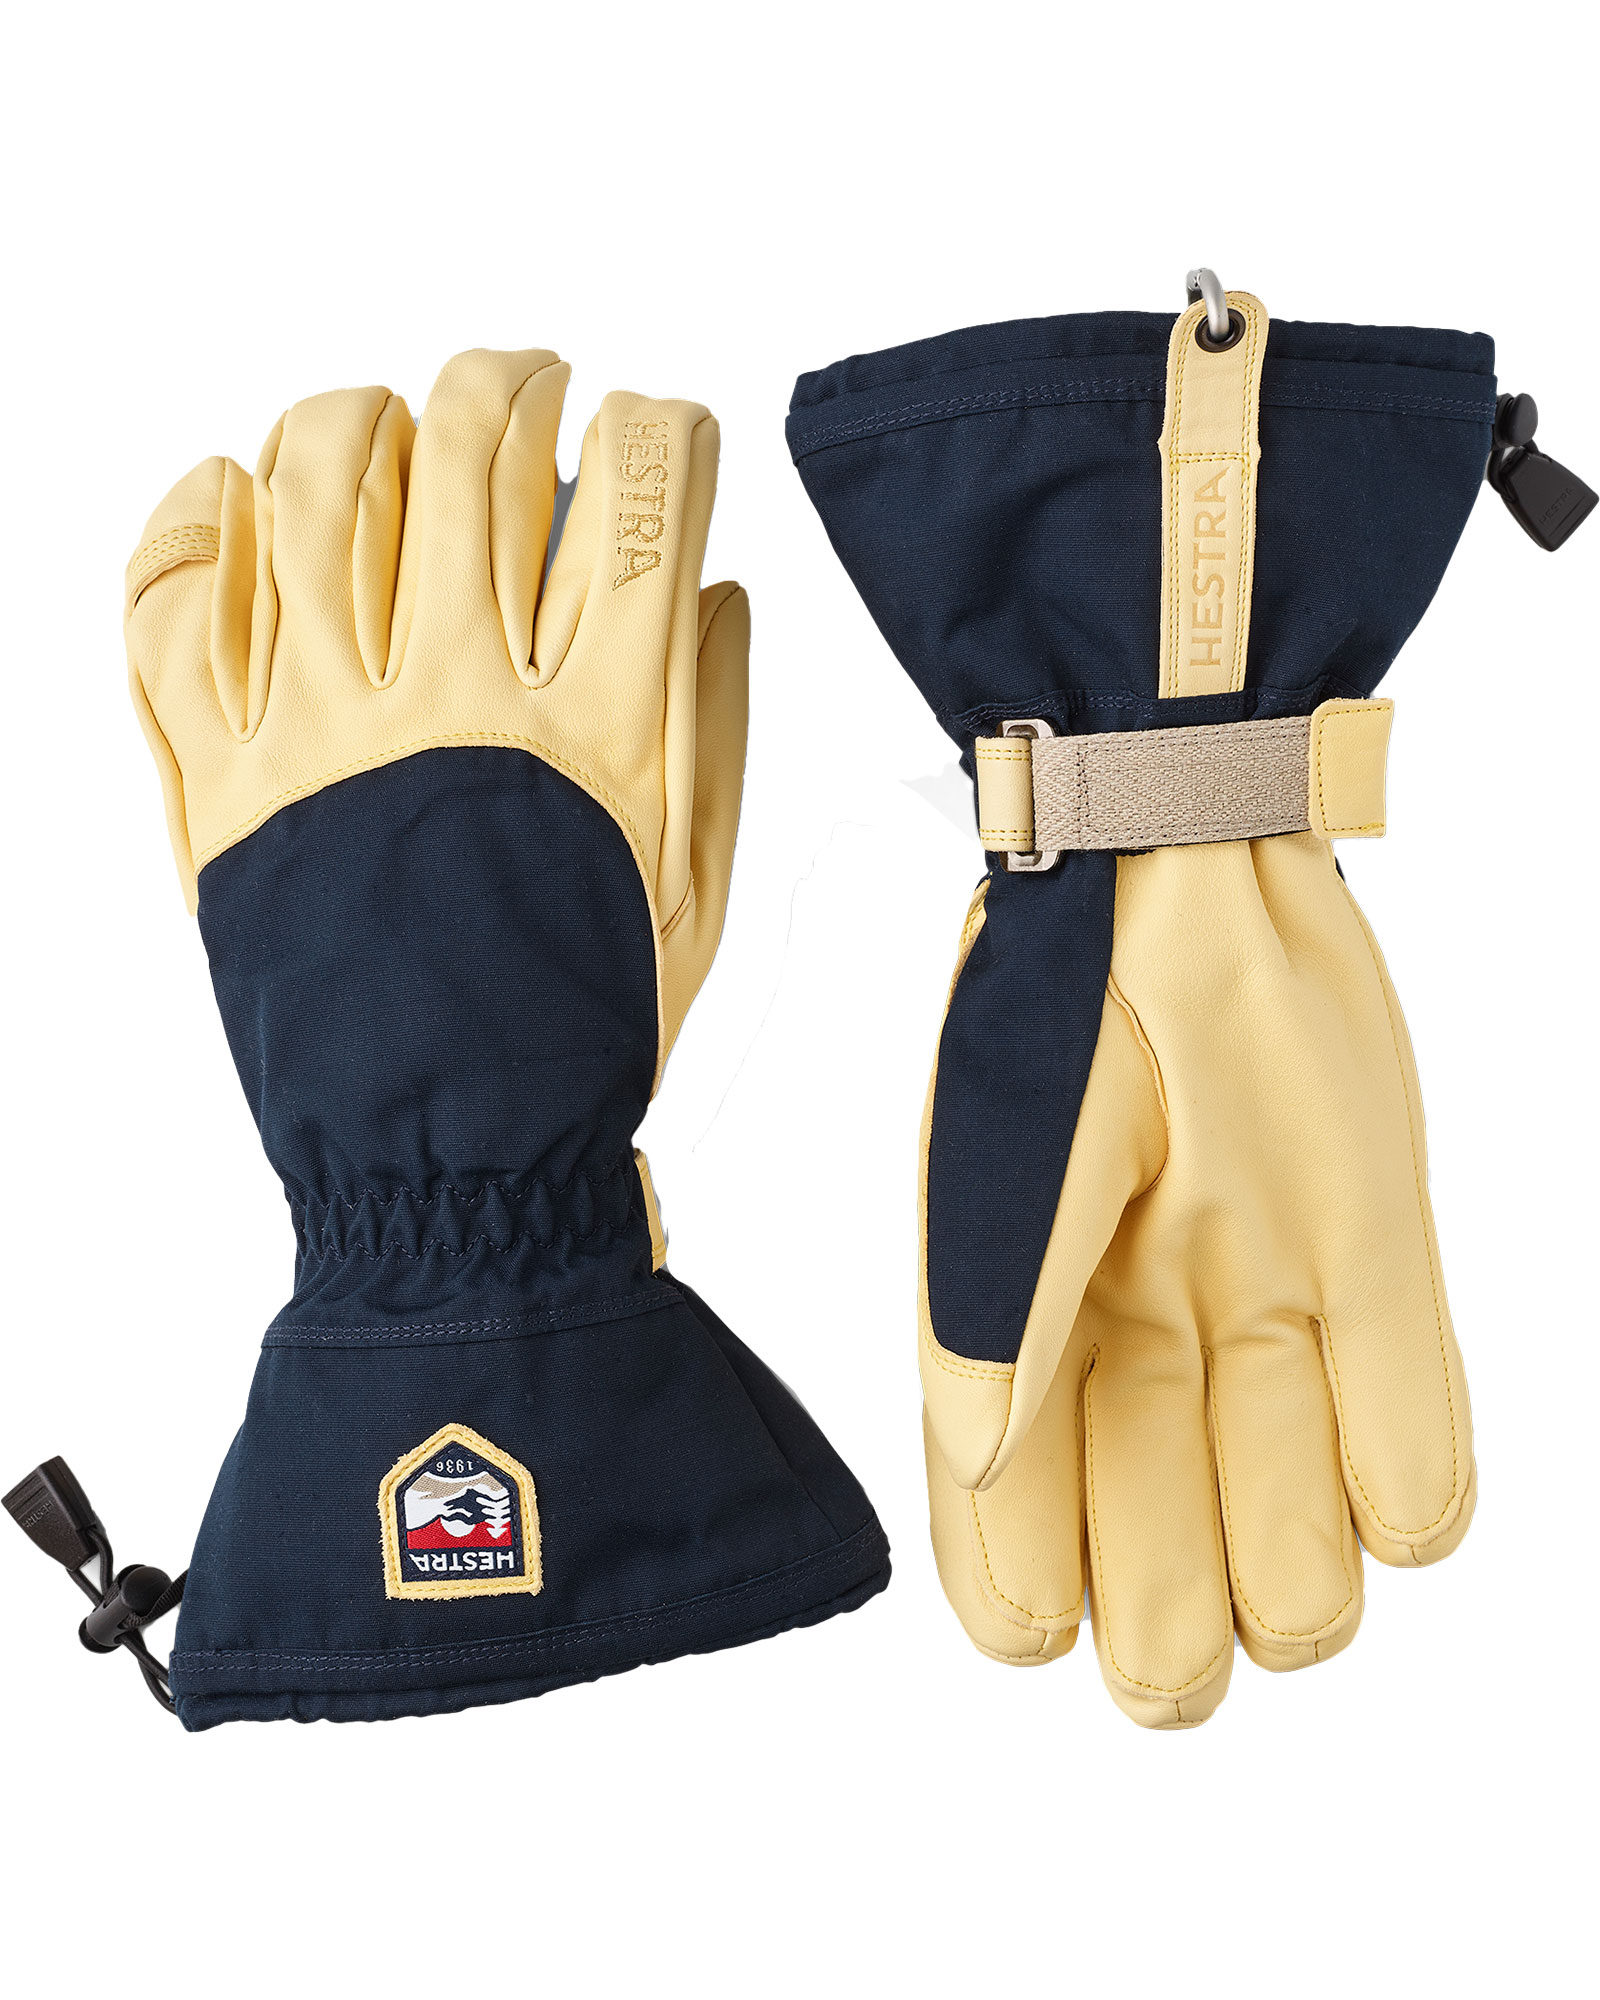 Hestra Narvik Ecocuir Men’s Gloves - Navy/Natural Size 10